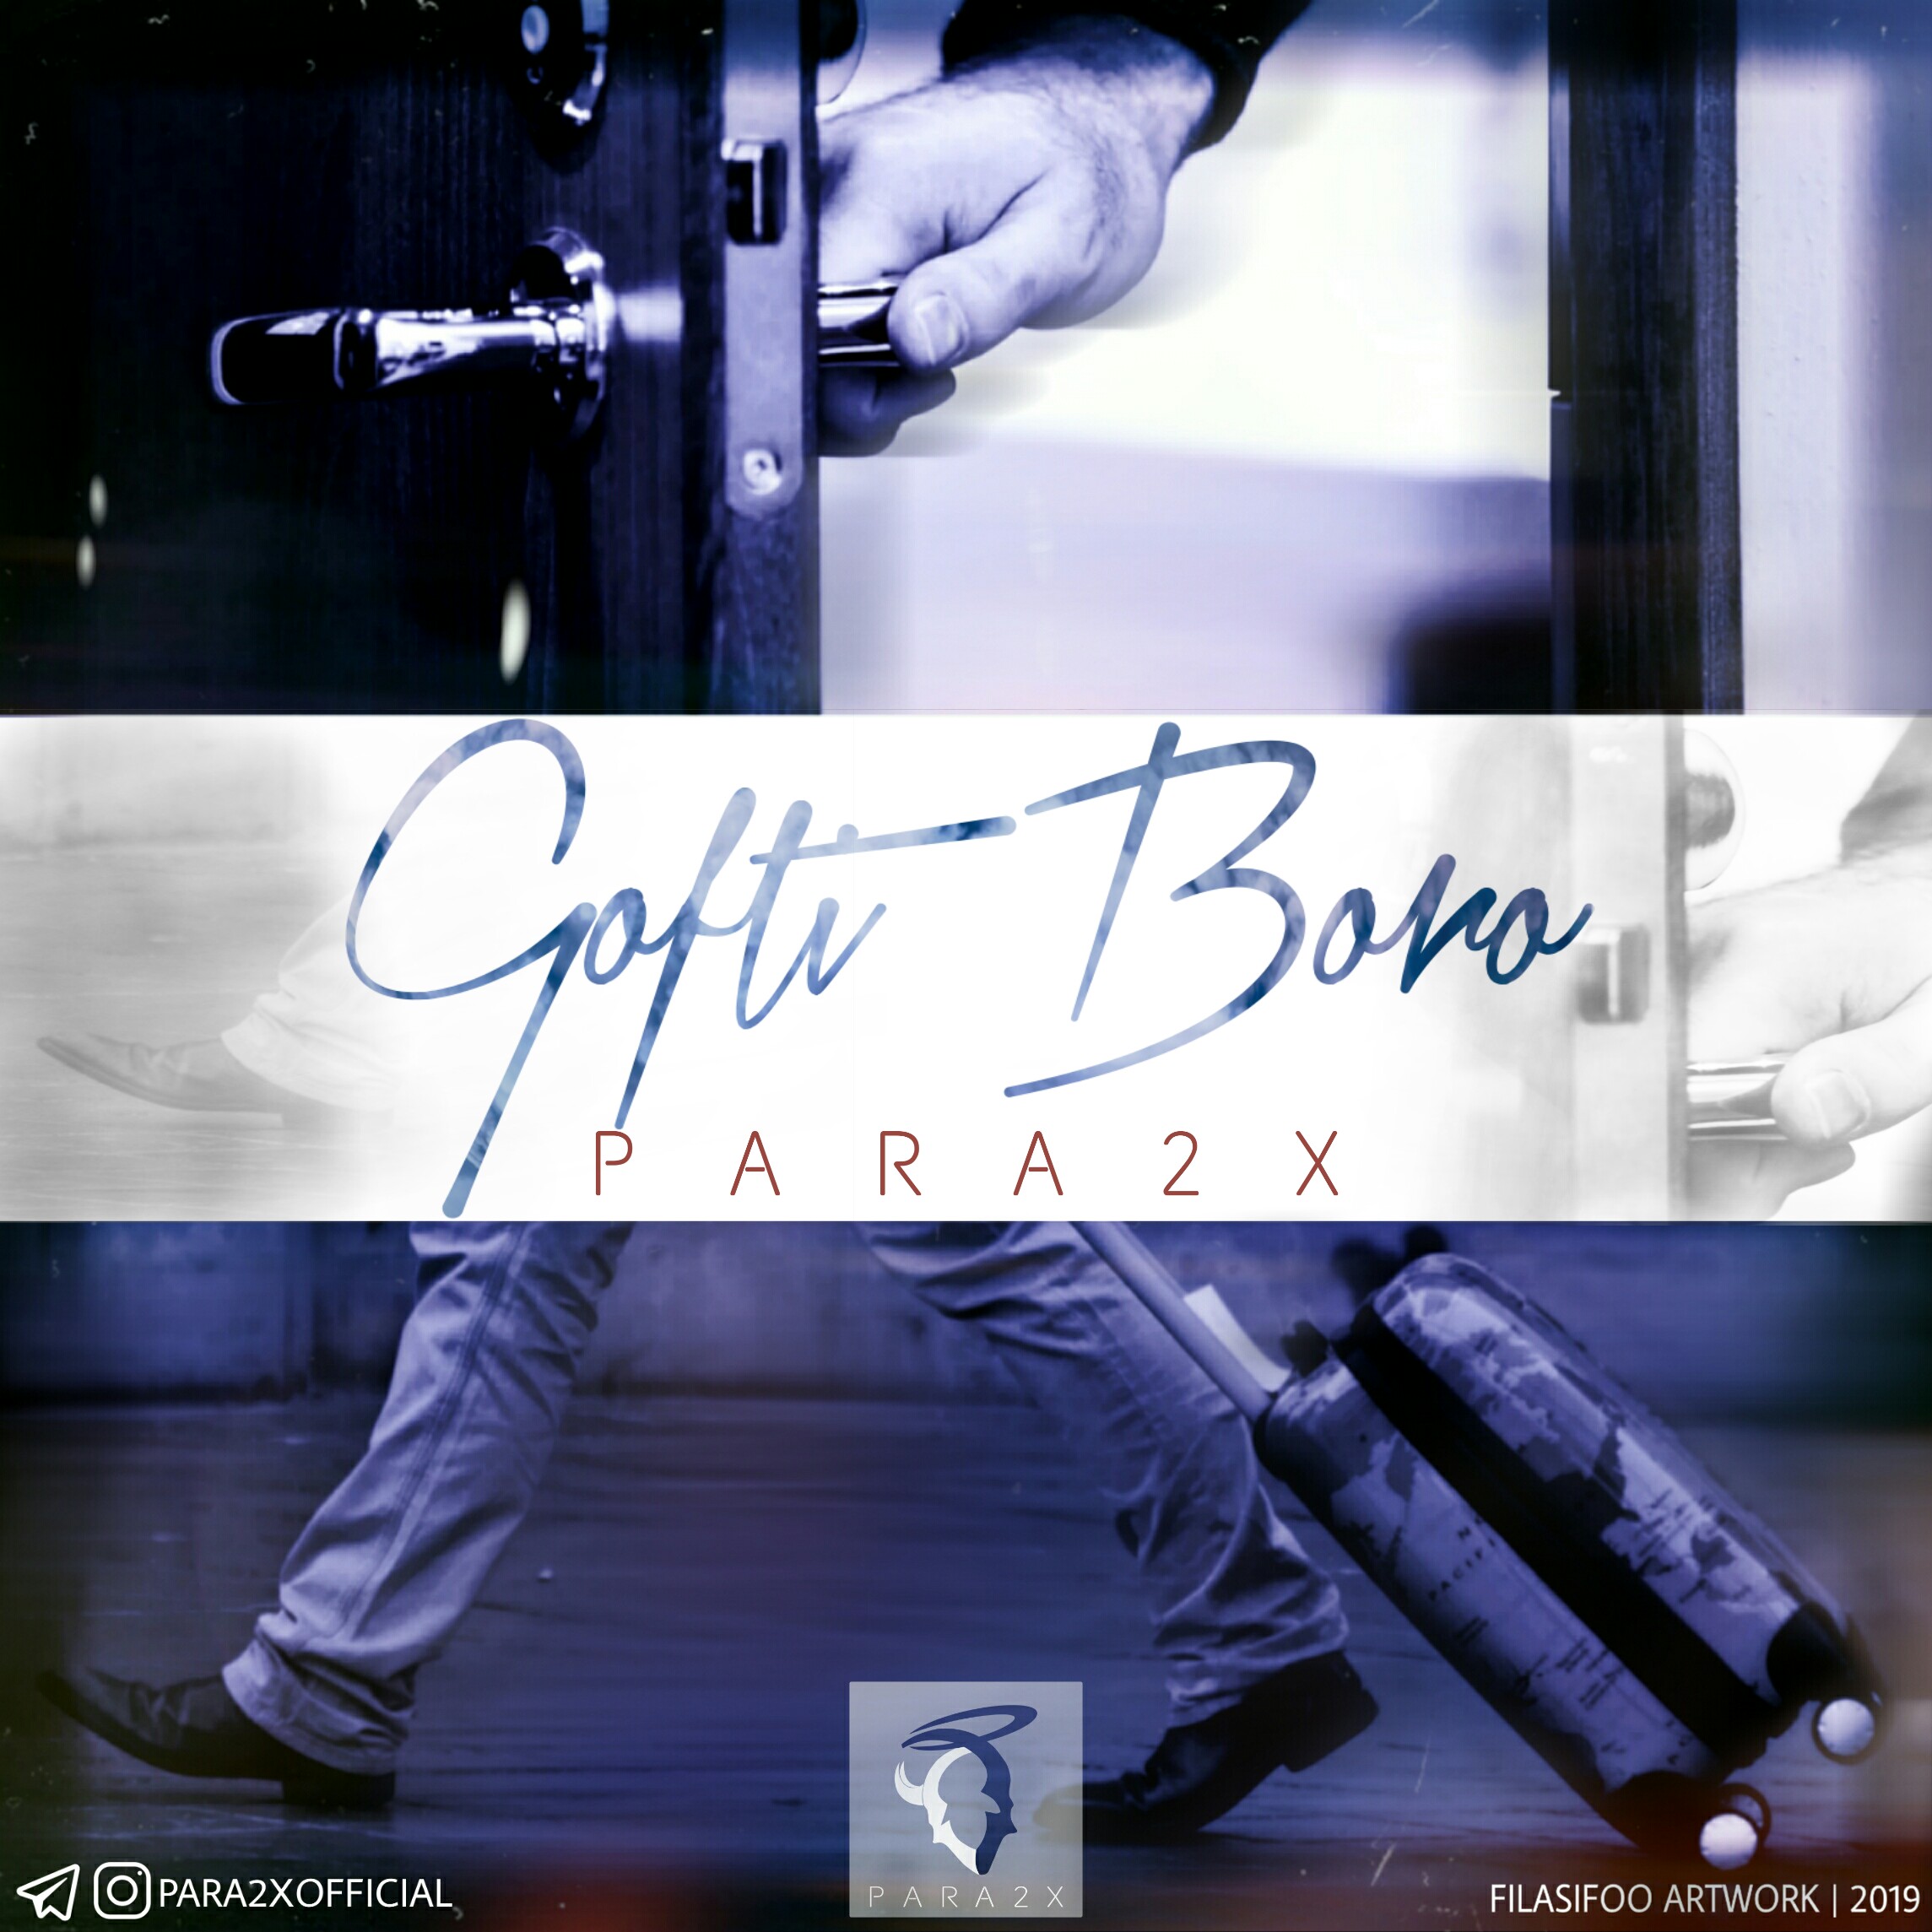  دانلود آهنگ جدید پارادوکس - گفتی برو | Download New Music By Para2x - Gofti Boro